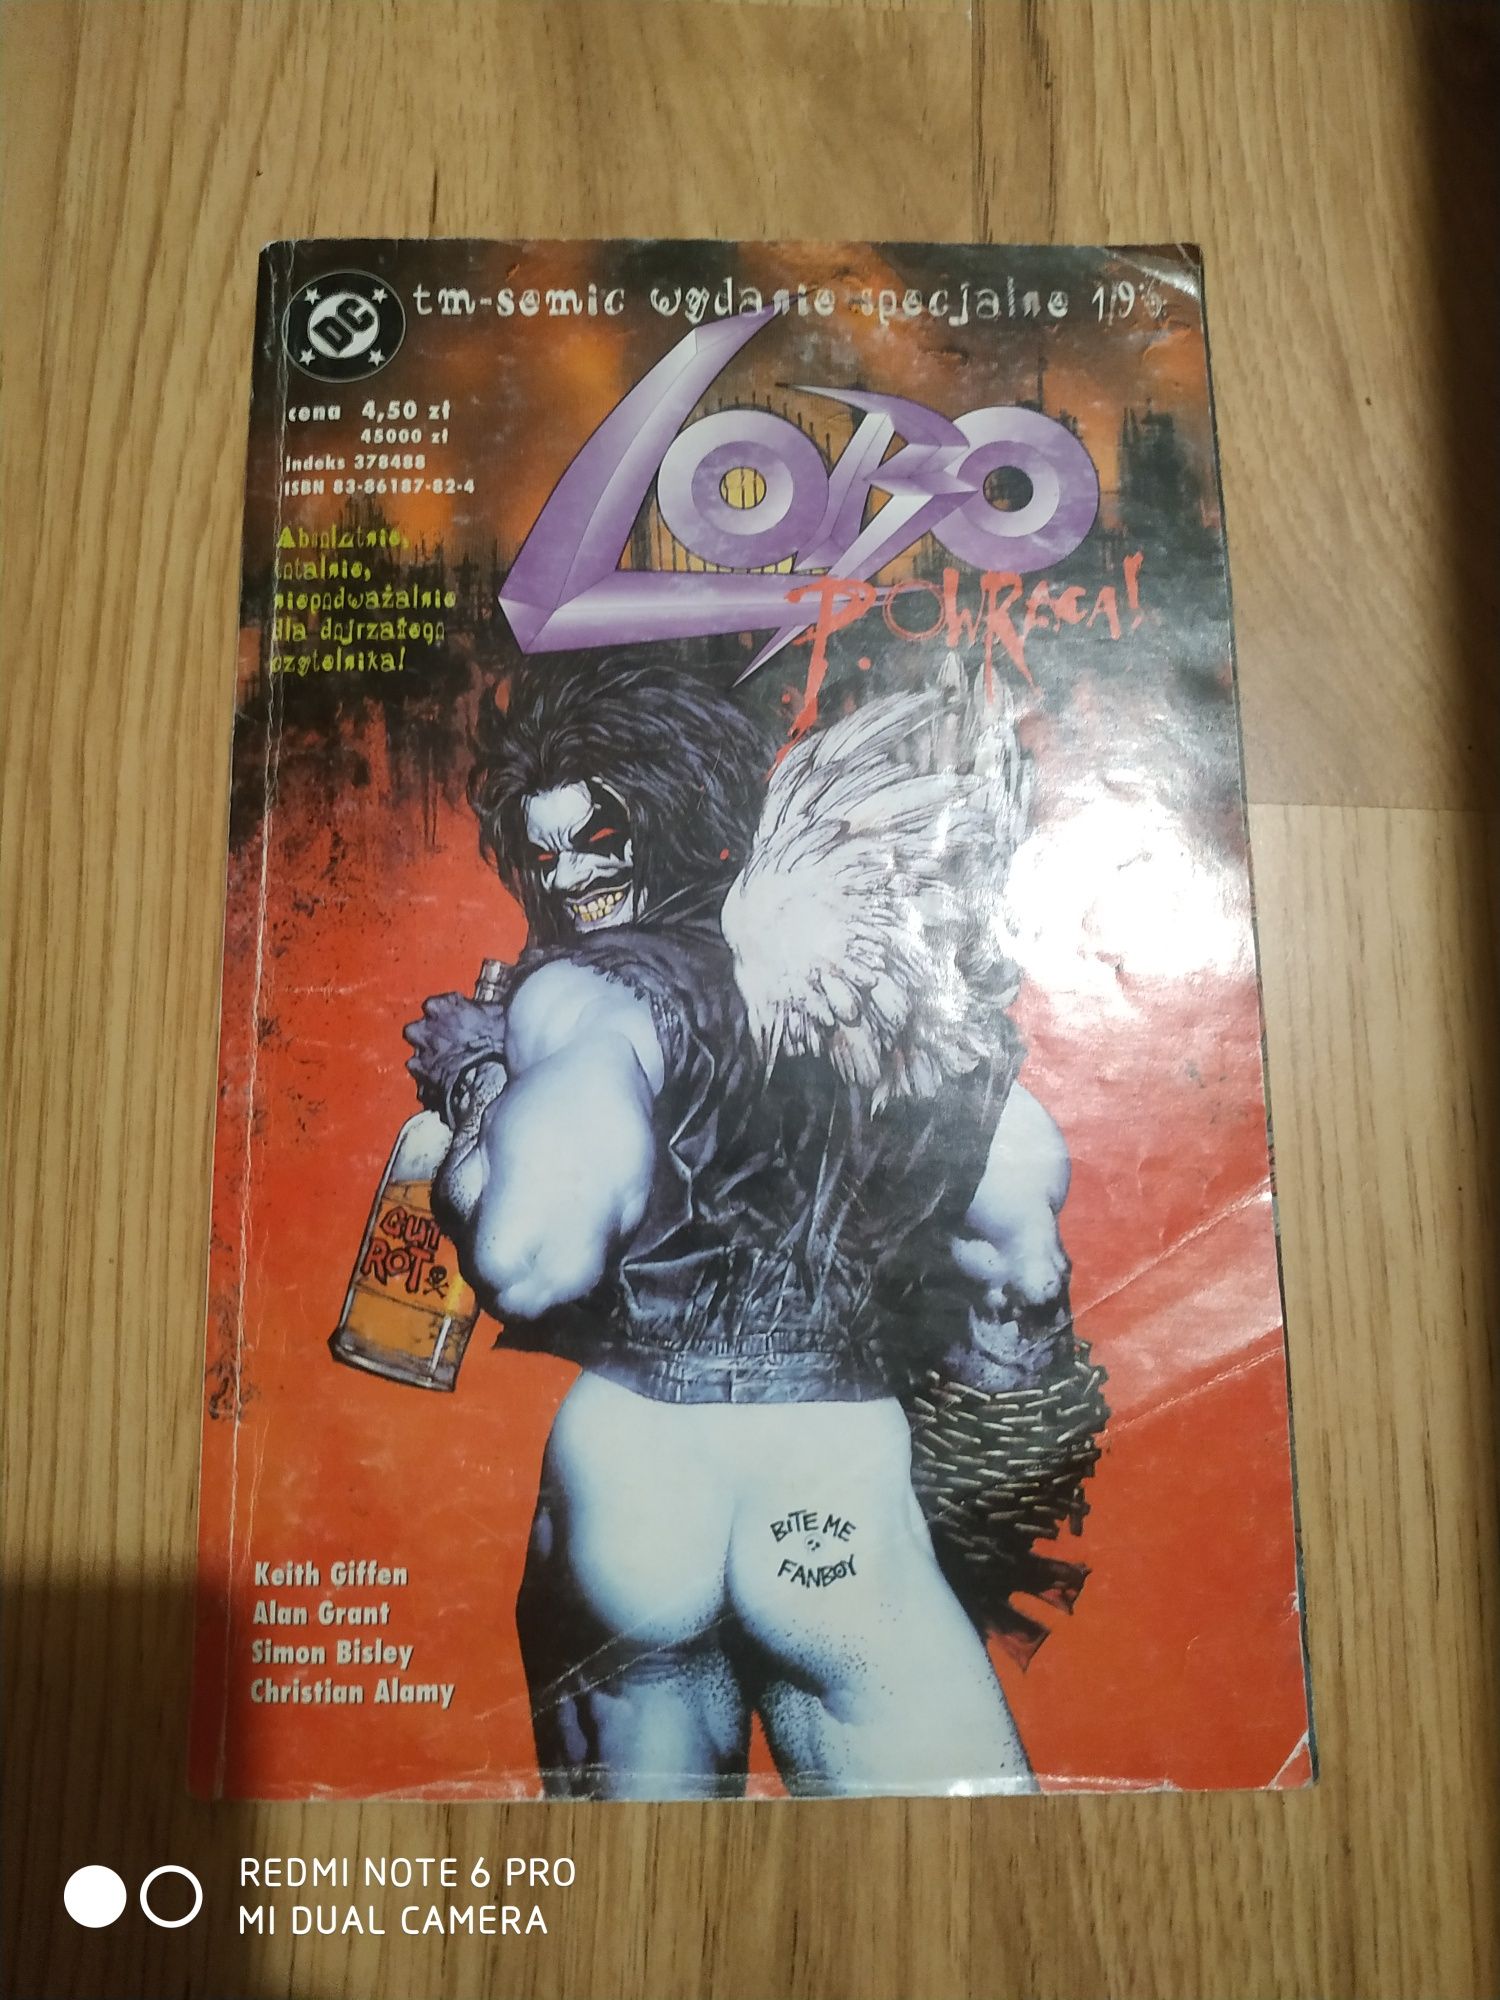 Lobo powraca - wydanie specjalne 1/96